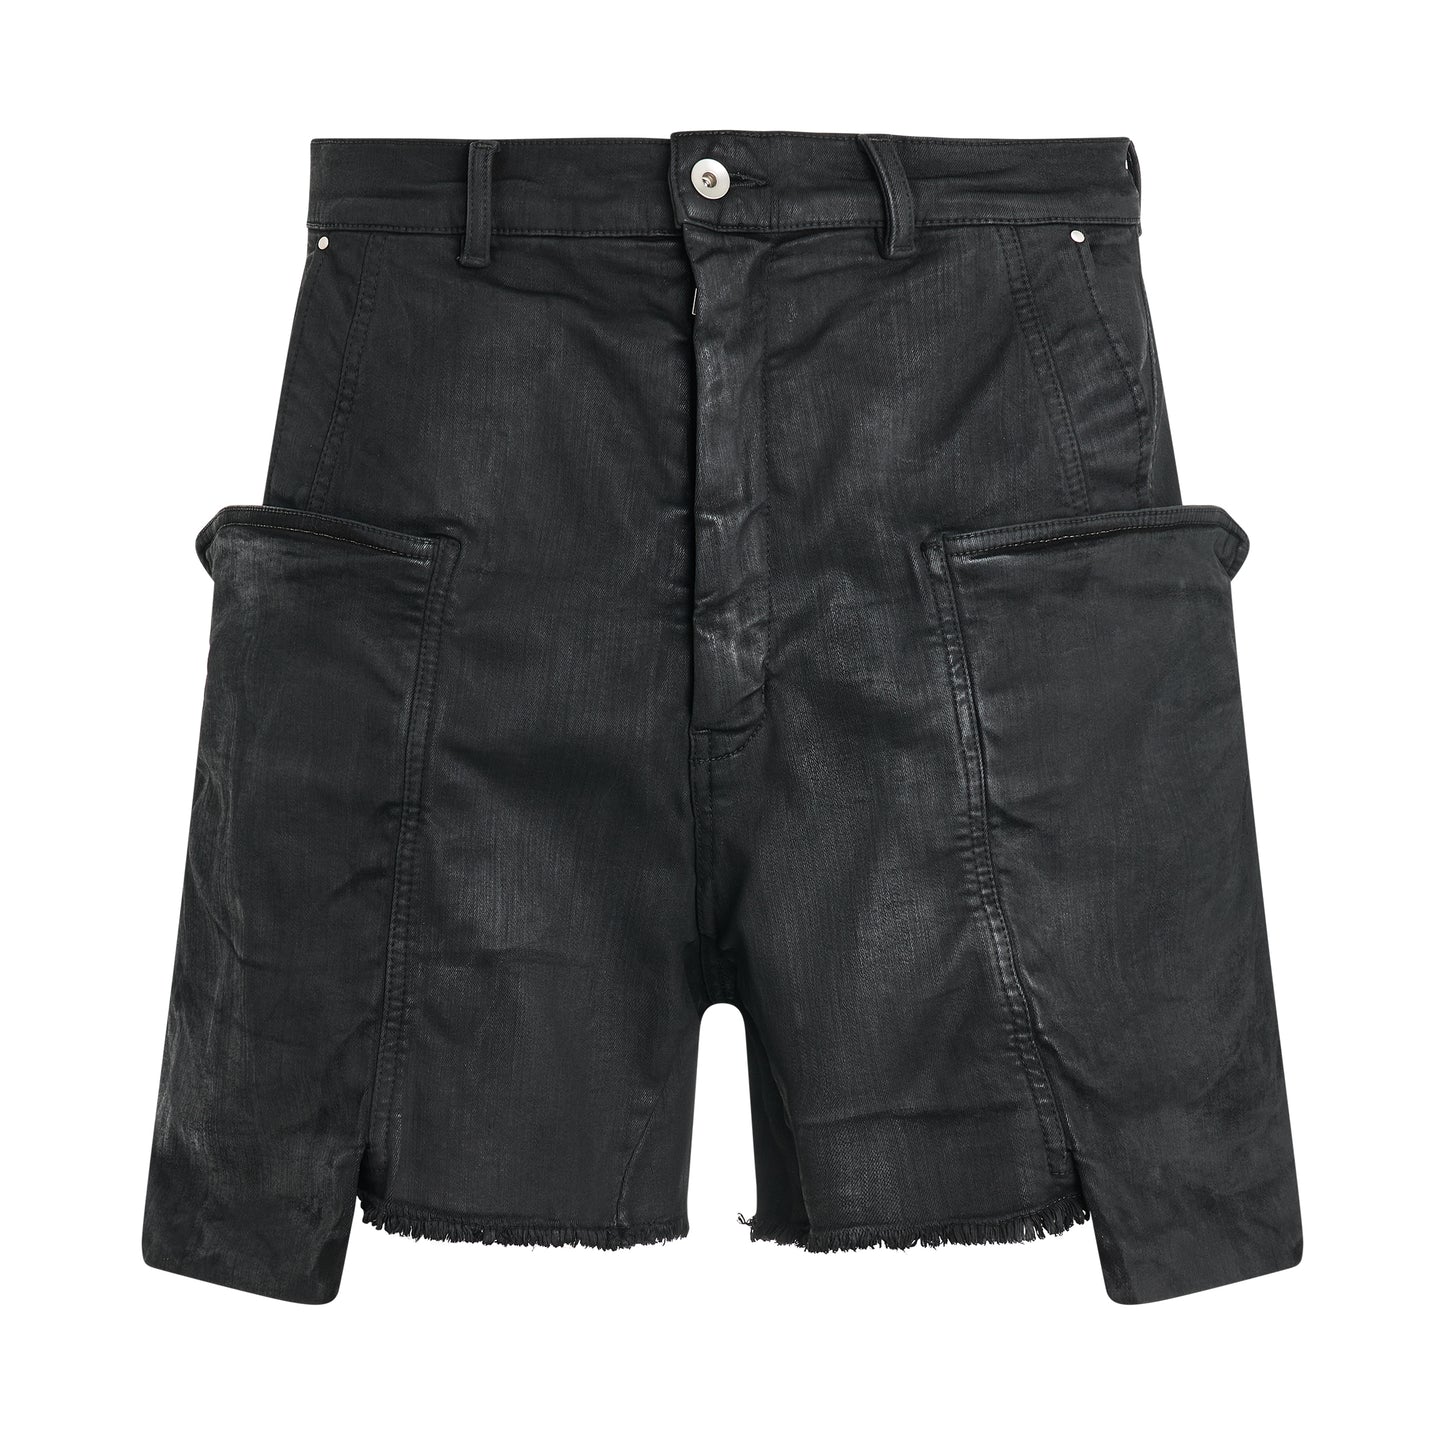 Stefan Cargo Shorts in Black Wax